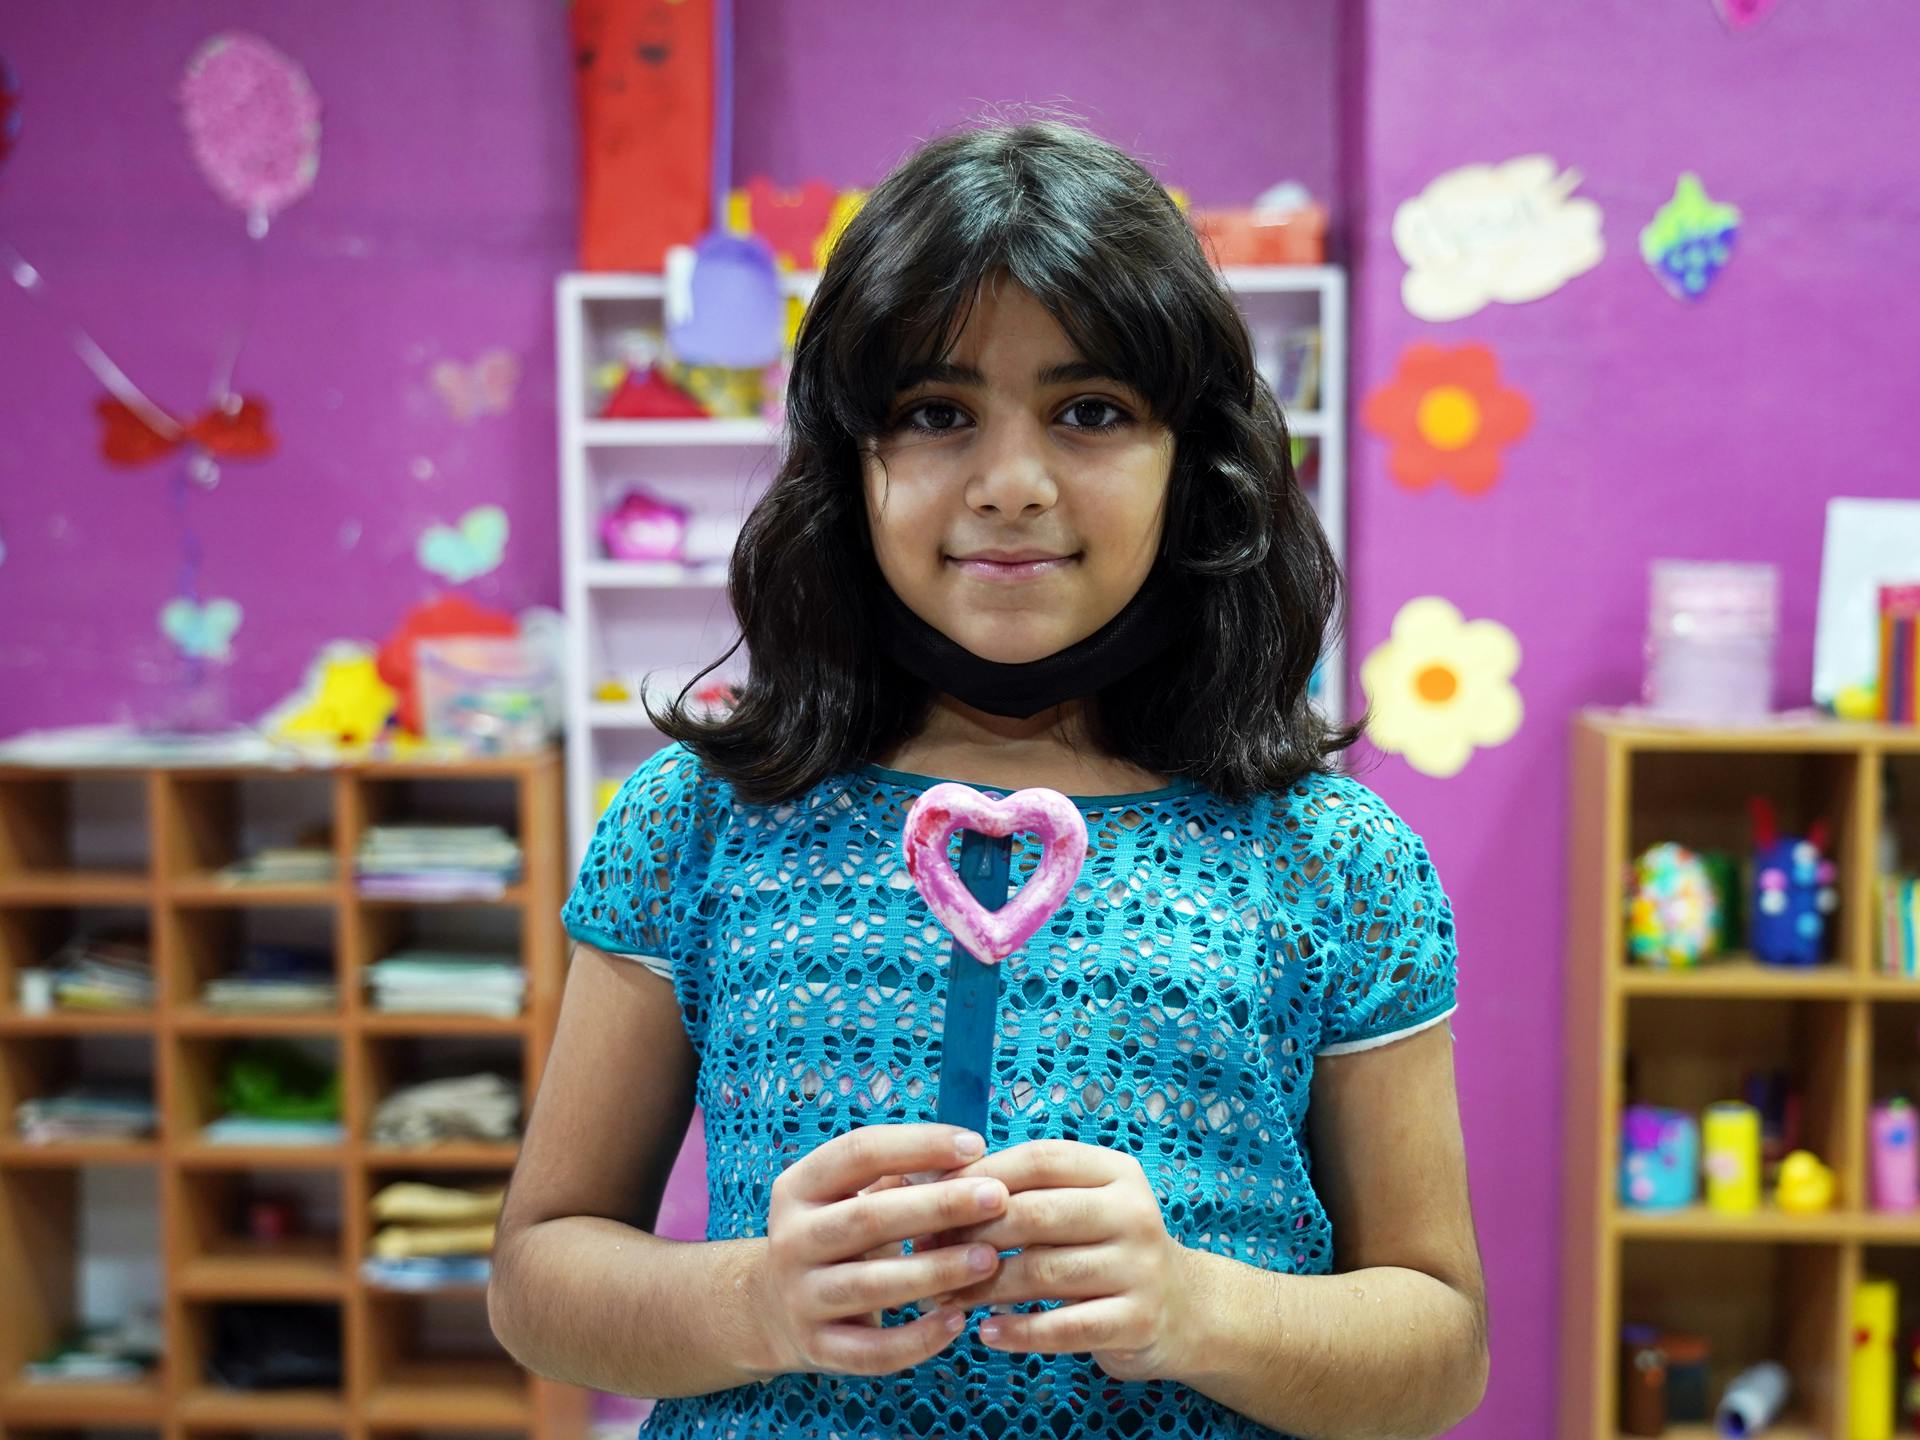 En flicka står i ett rum med färgglada bilder och håller ett pysselhjärta